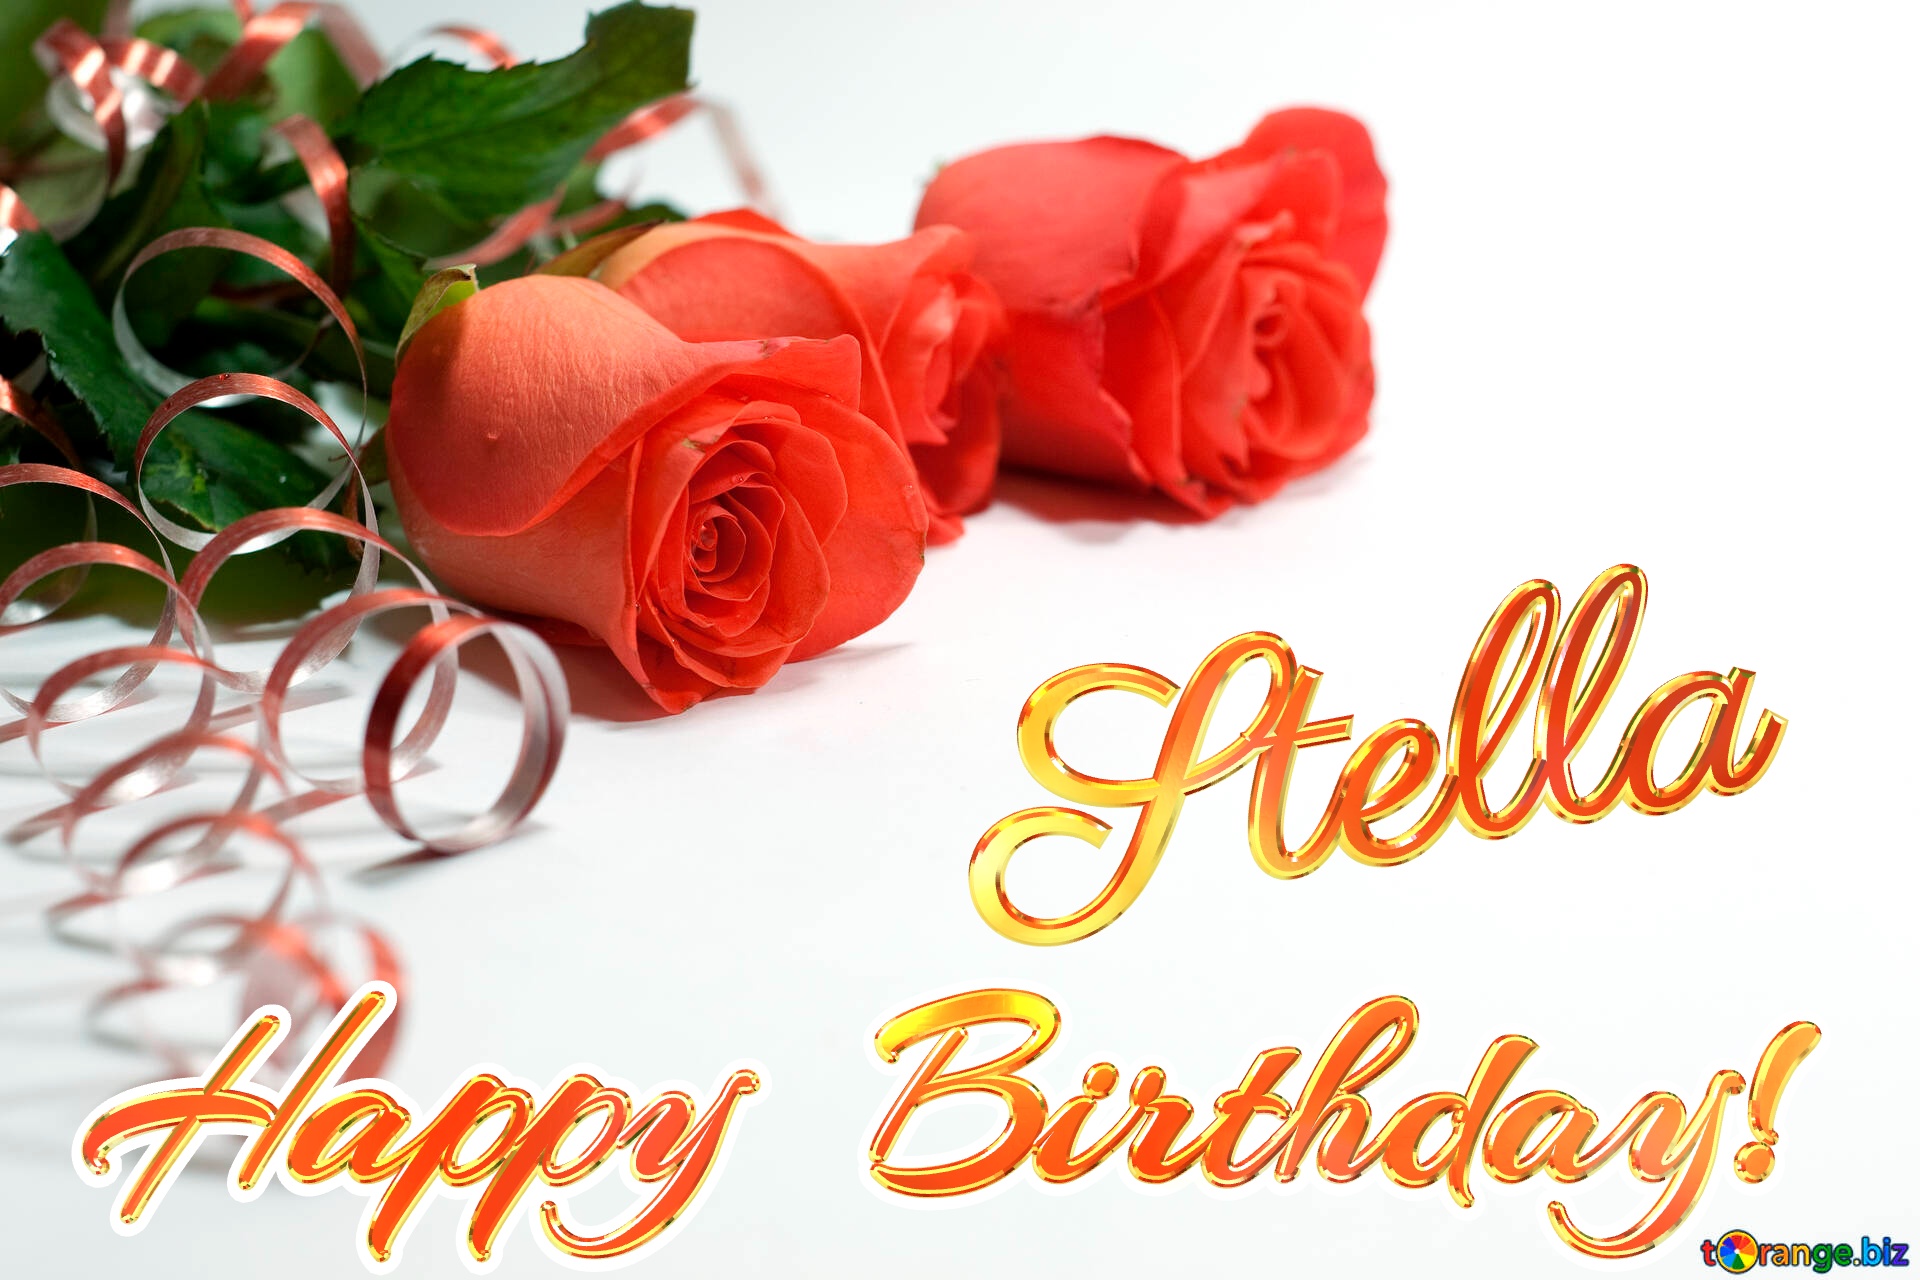 Happy Birthday Ma! #stellarosa #gold #redrose #rose #birthdaycake #van... |  TikTok